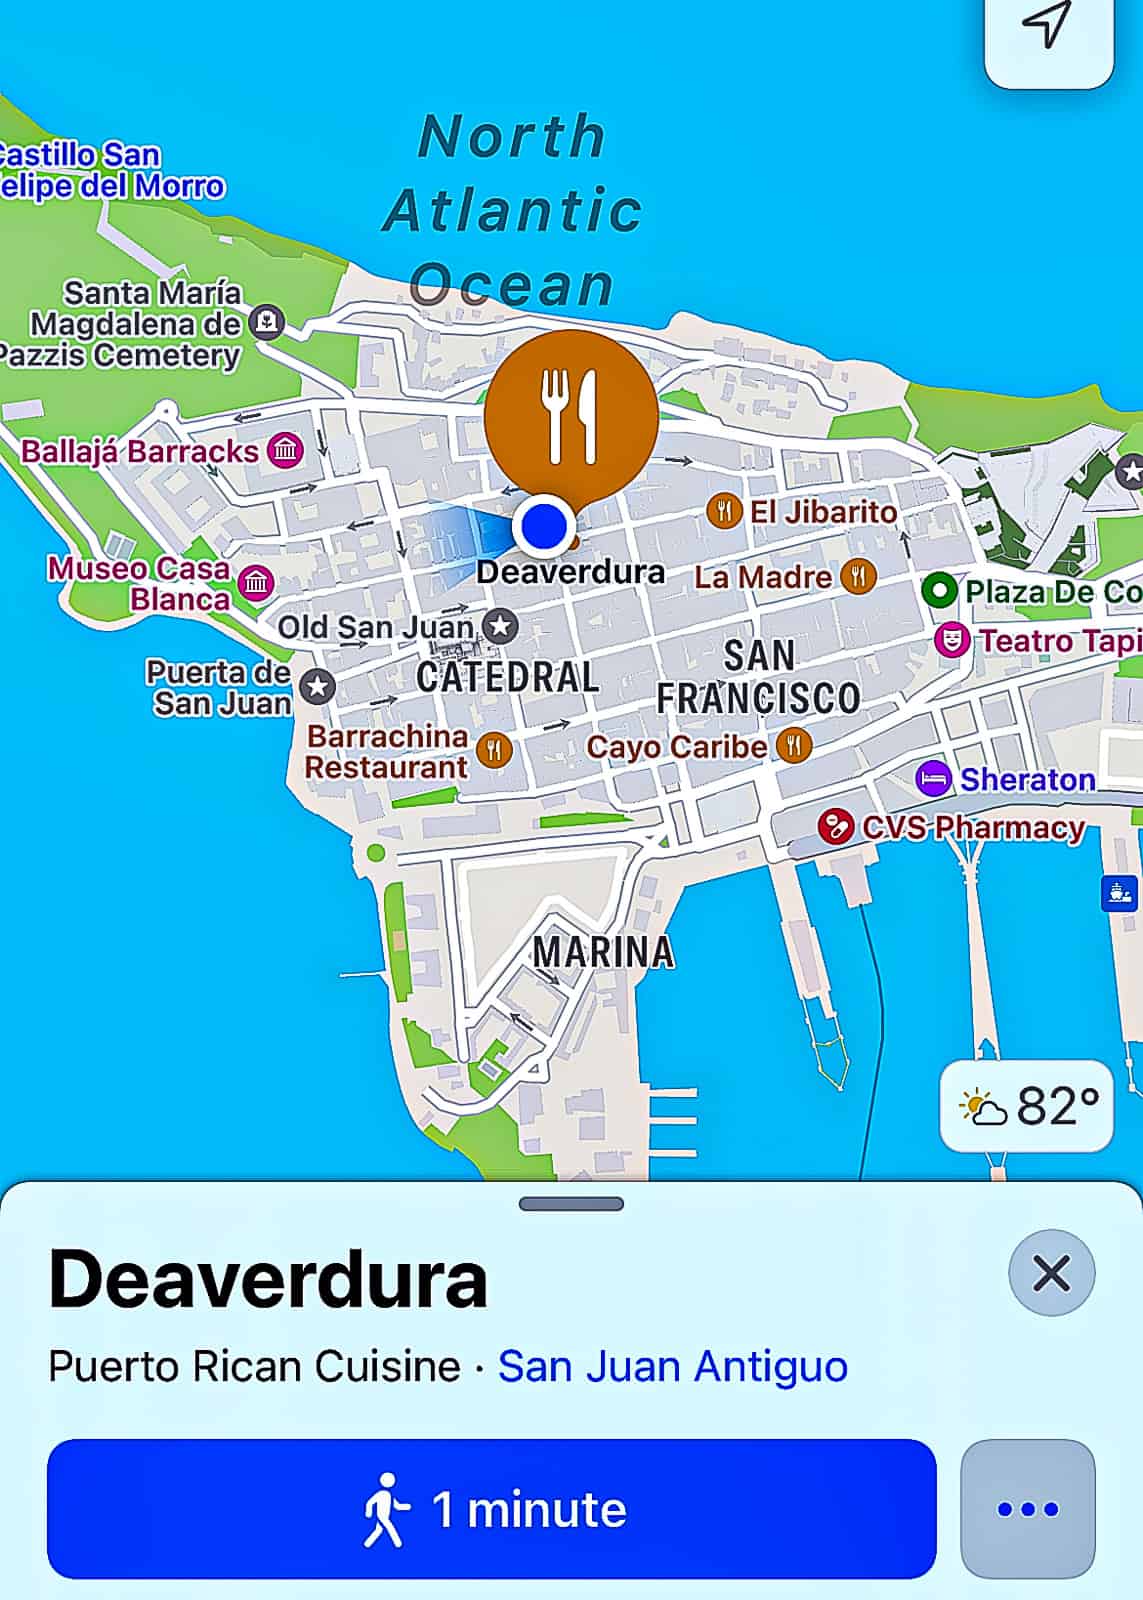 Location of Deaverdura Restaurant in Old San Juan Puerto Rico